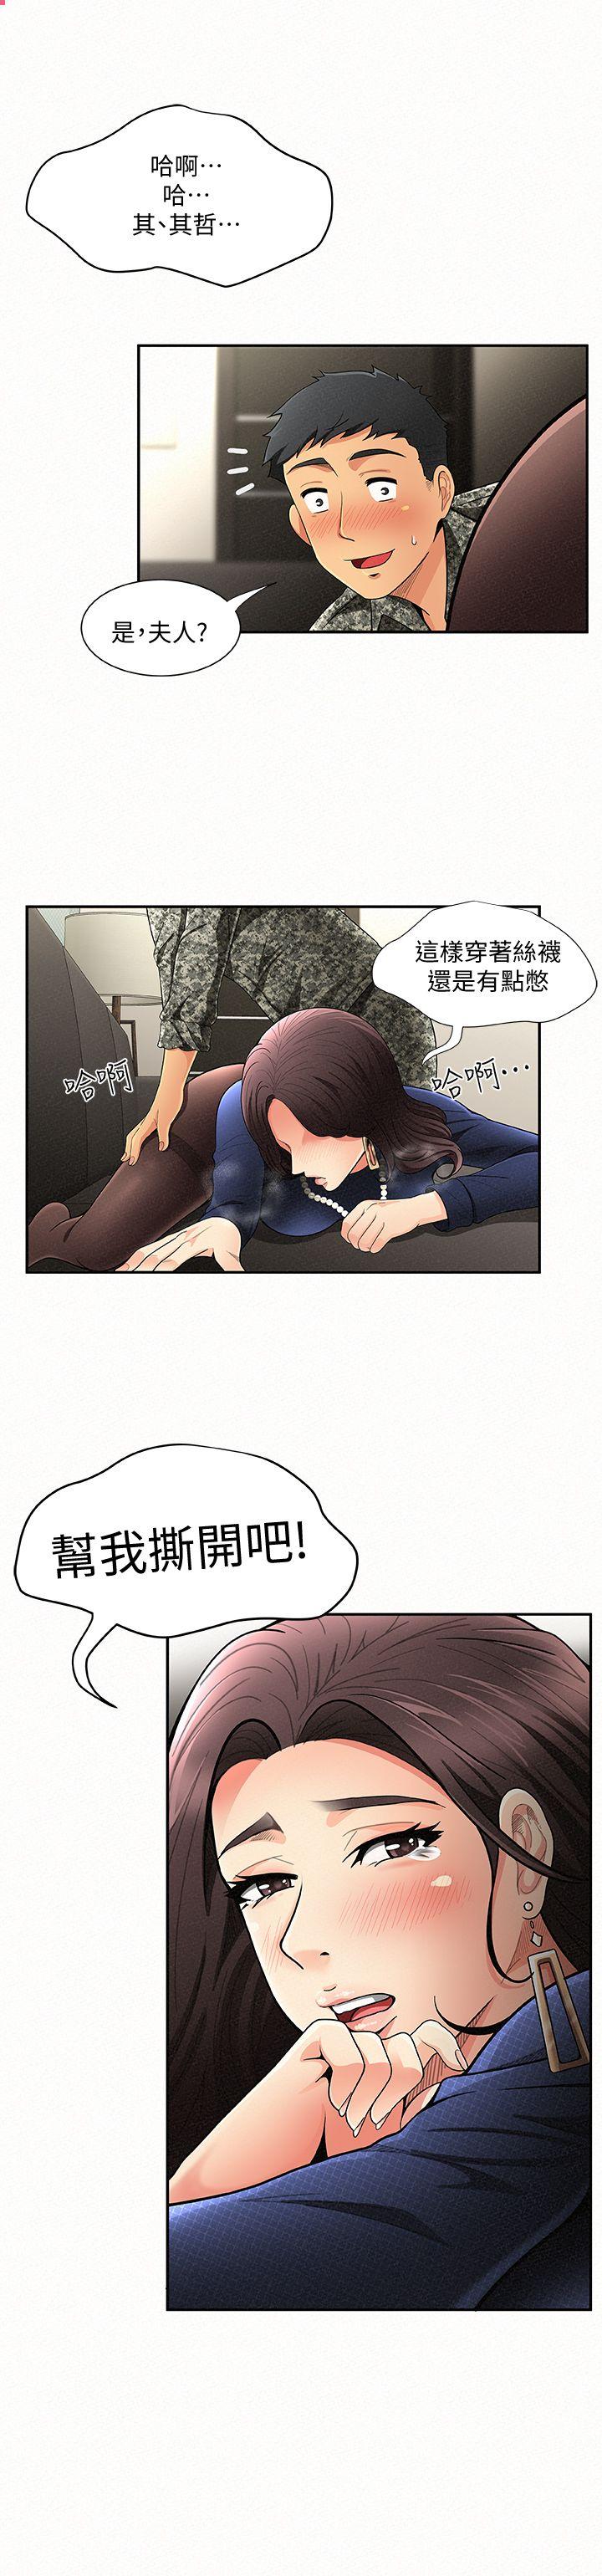 韩国污漫画 報告夫人 第2话-美艳夫人的诱惑 2